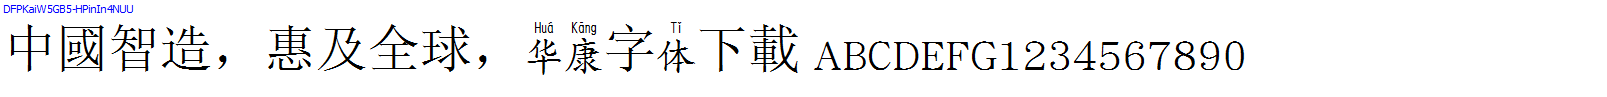 華康字體DFPKaiW5GB5-HPinIn4NUU.TTF